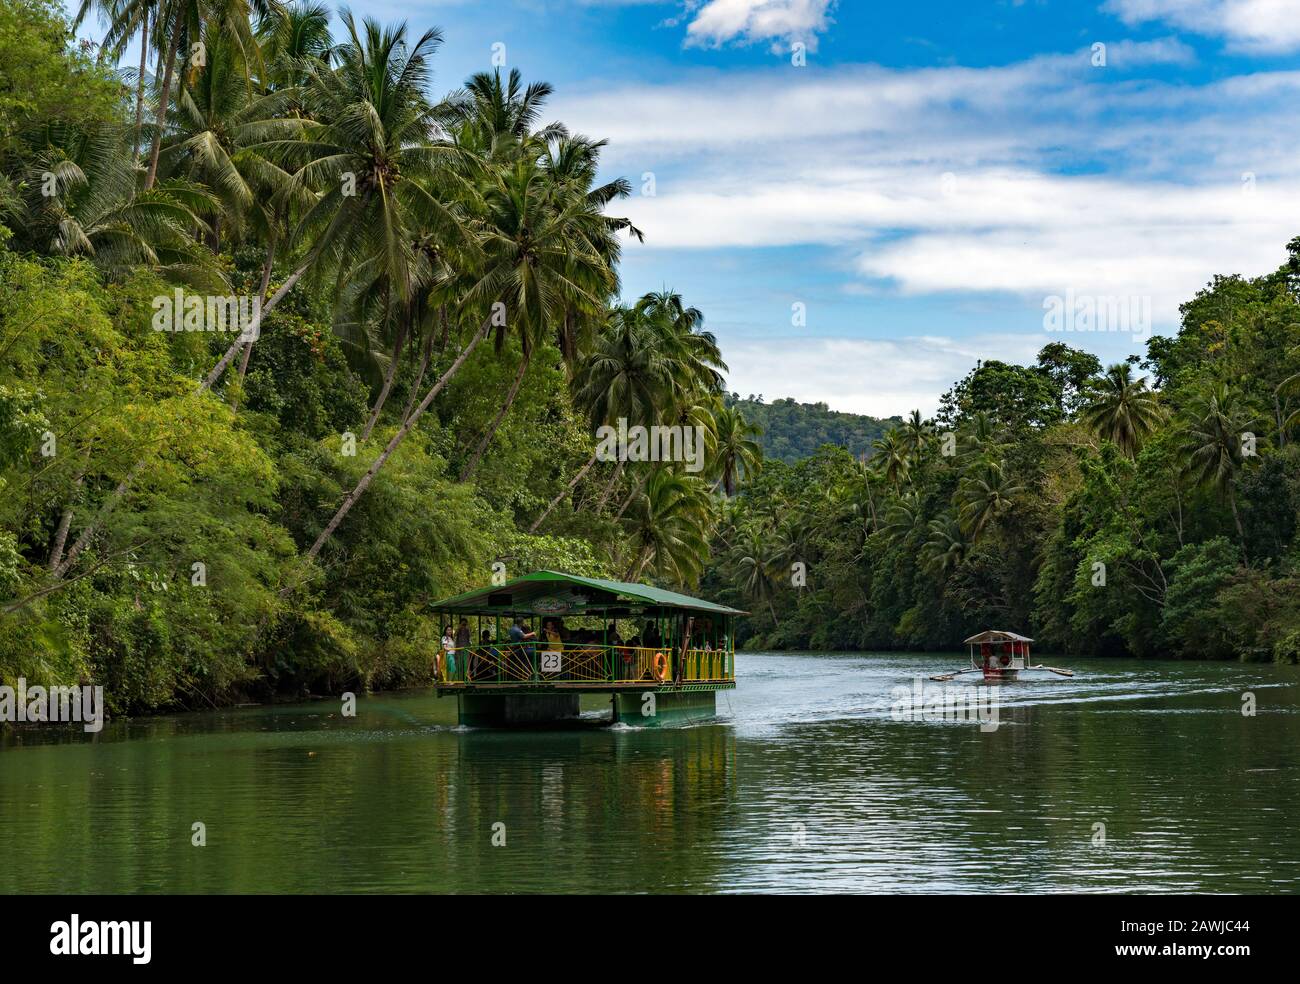 La nave da crociera sul fiume Loboc è un fiume nella provincia di Bohol delle Filippine. E' una delle principali destinazioni turistiche di Bohol. Foto Stock